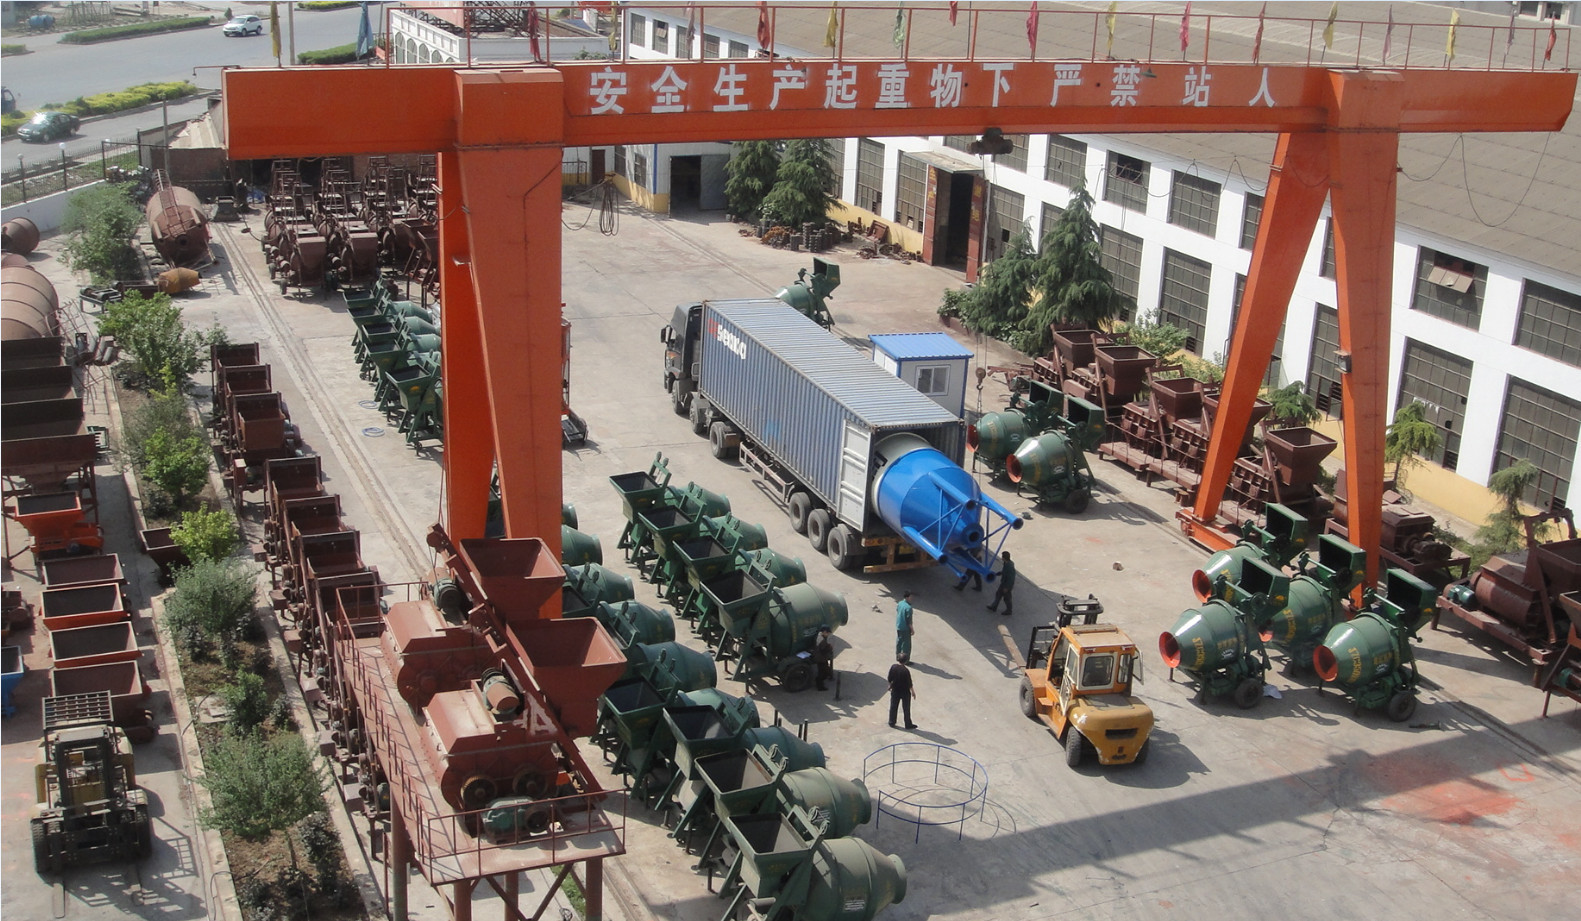 Zhengzhou Zhenheng Construction Equipment Co., Ltd.